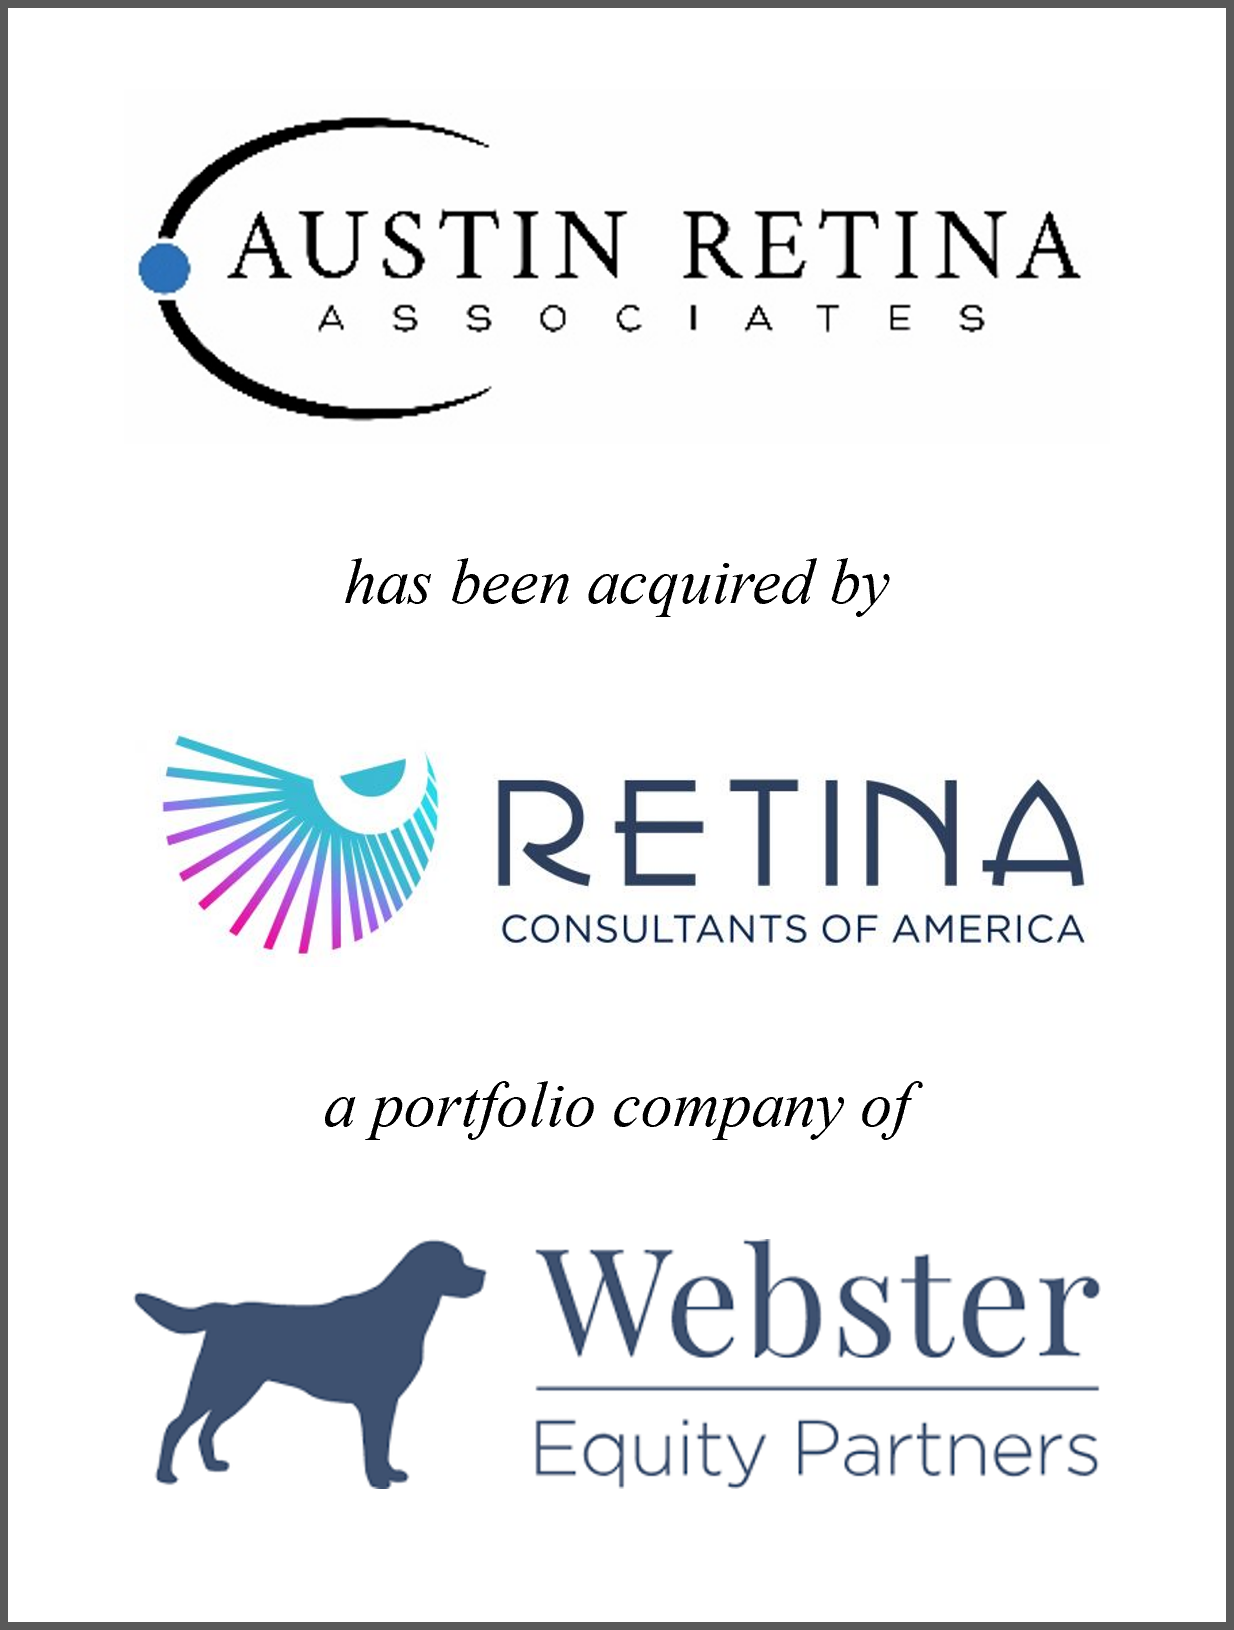 Austin Retina Associates